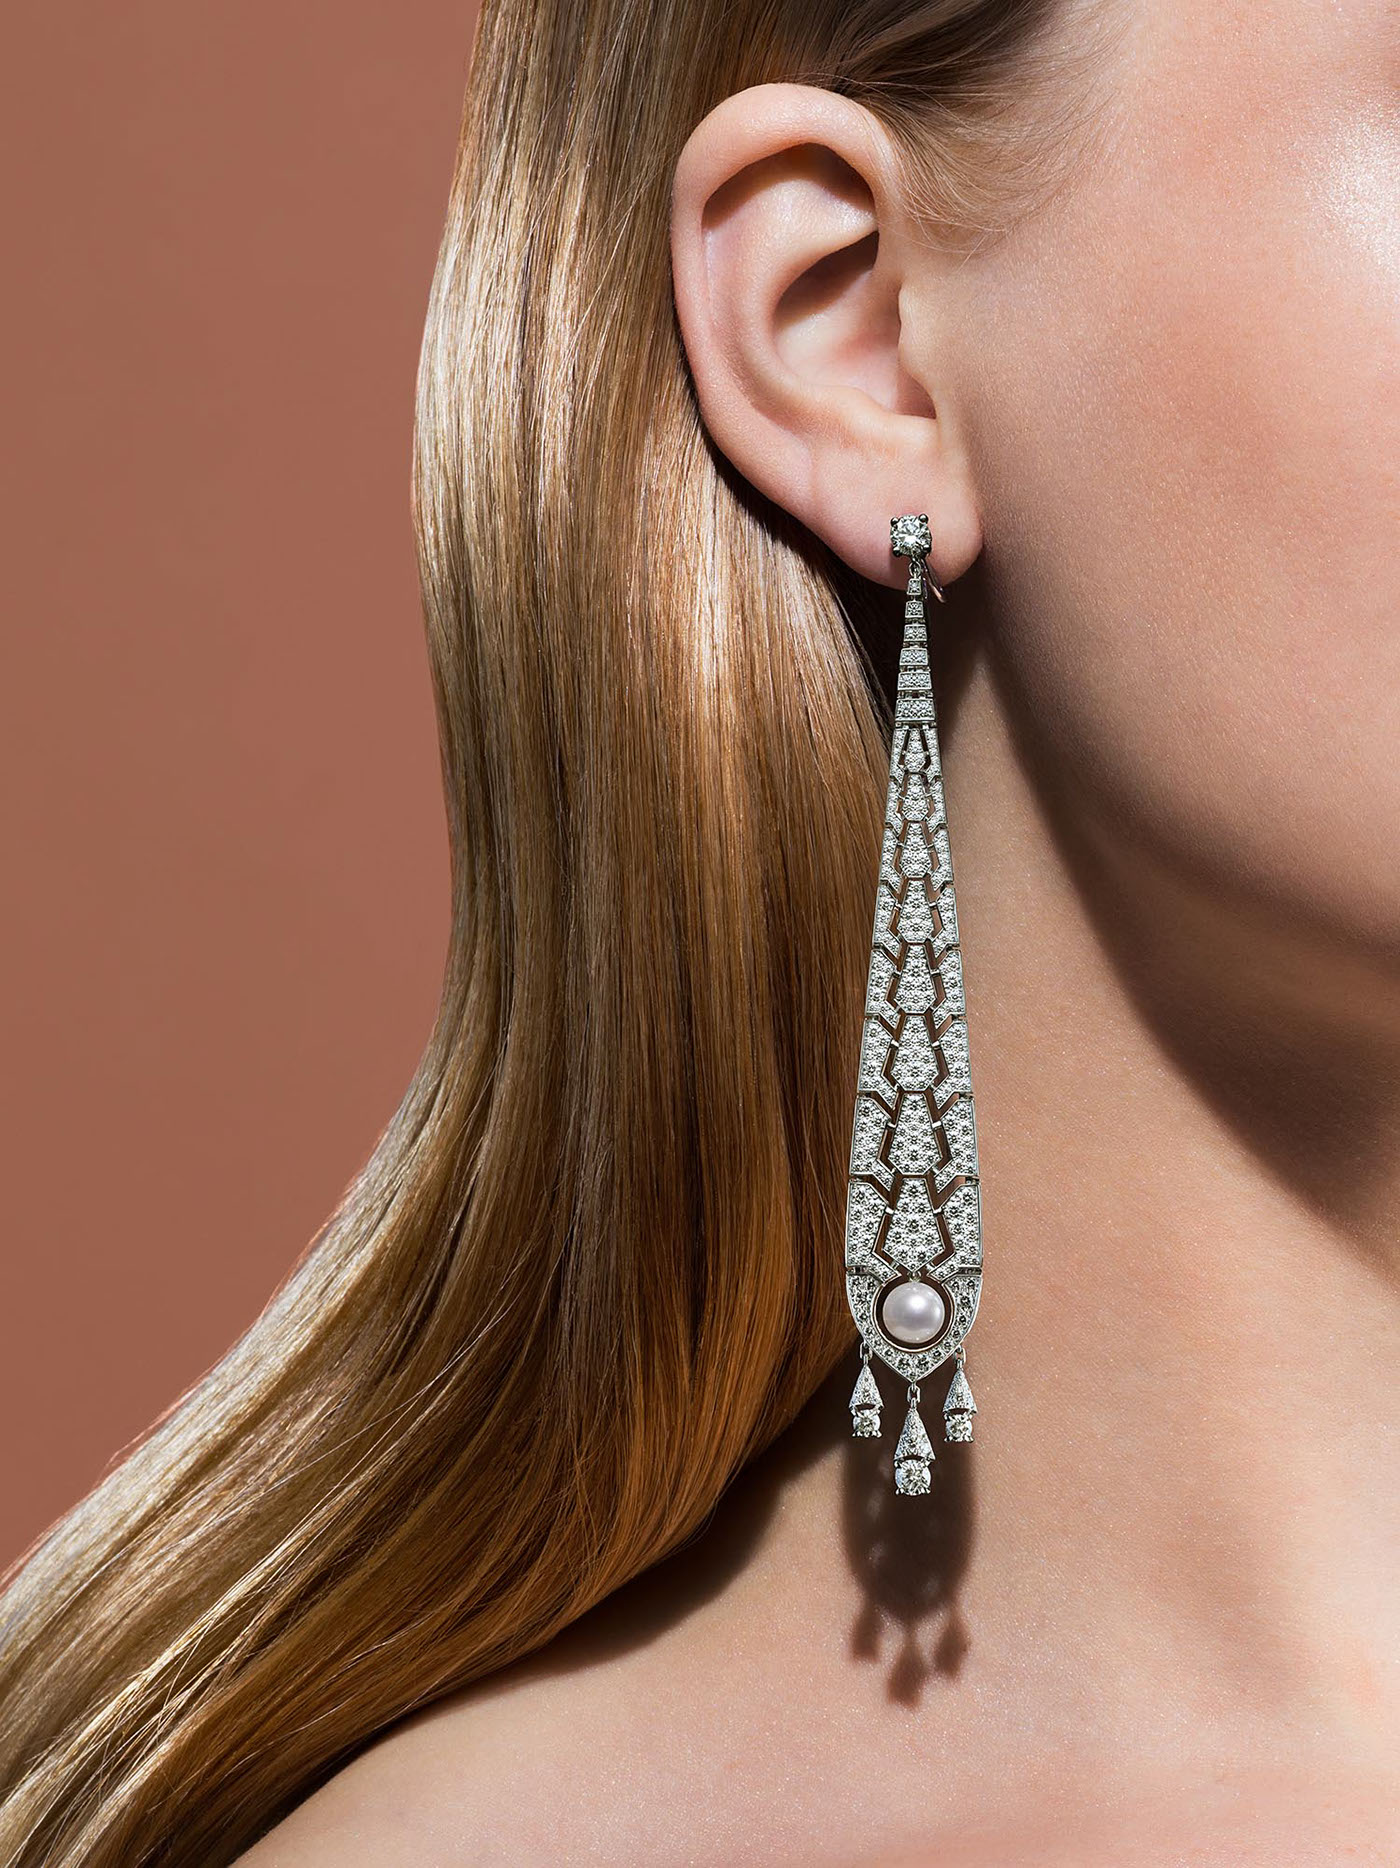 Jewellery jewelery Earring Gem Stone diamond  gold silver ear Fashion 